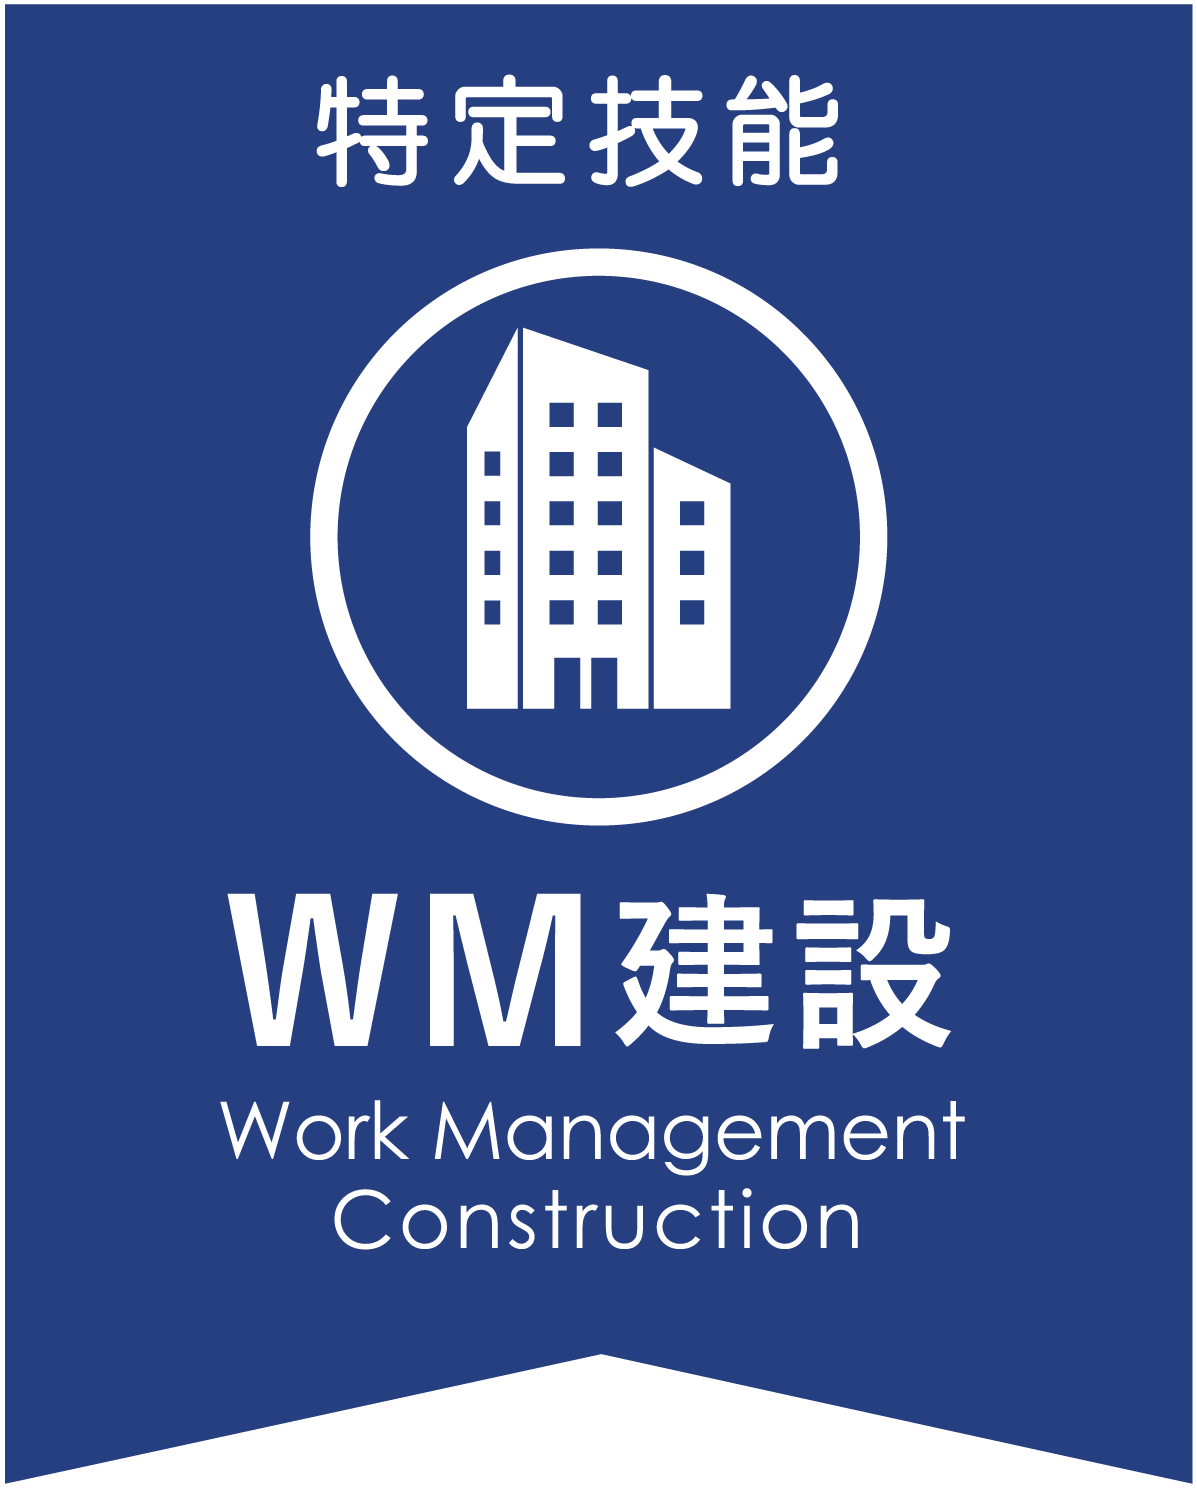 WM建設ロゴ